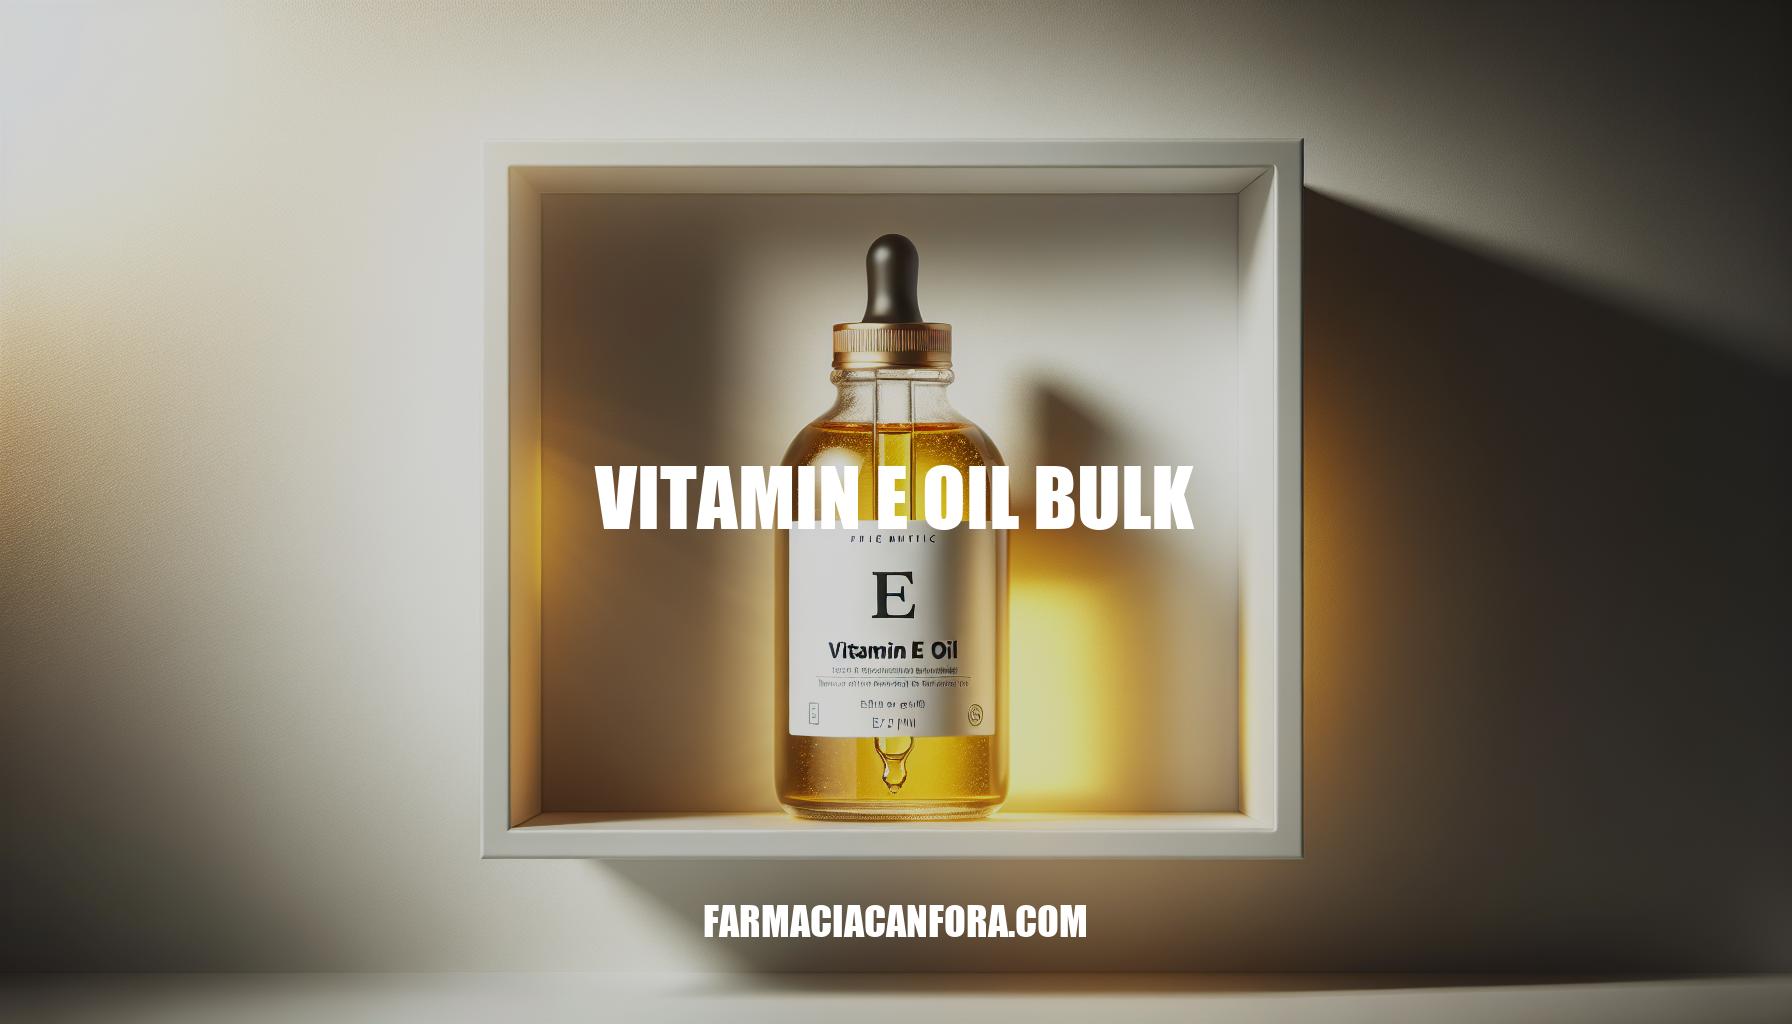 Bulk Vitamin E Oil: Essential Guide for Purchase and Storage